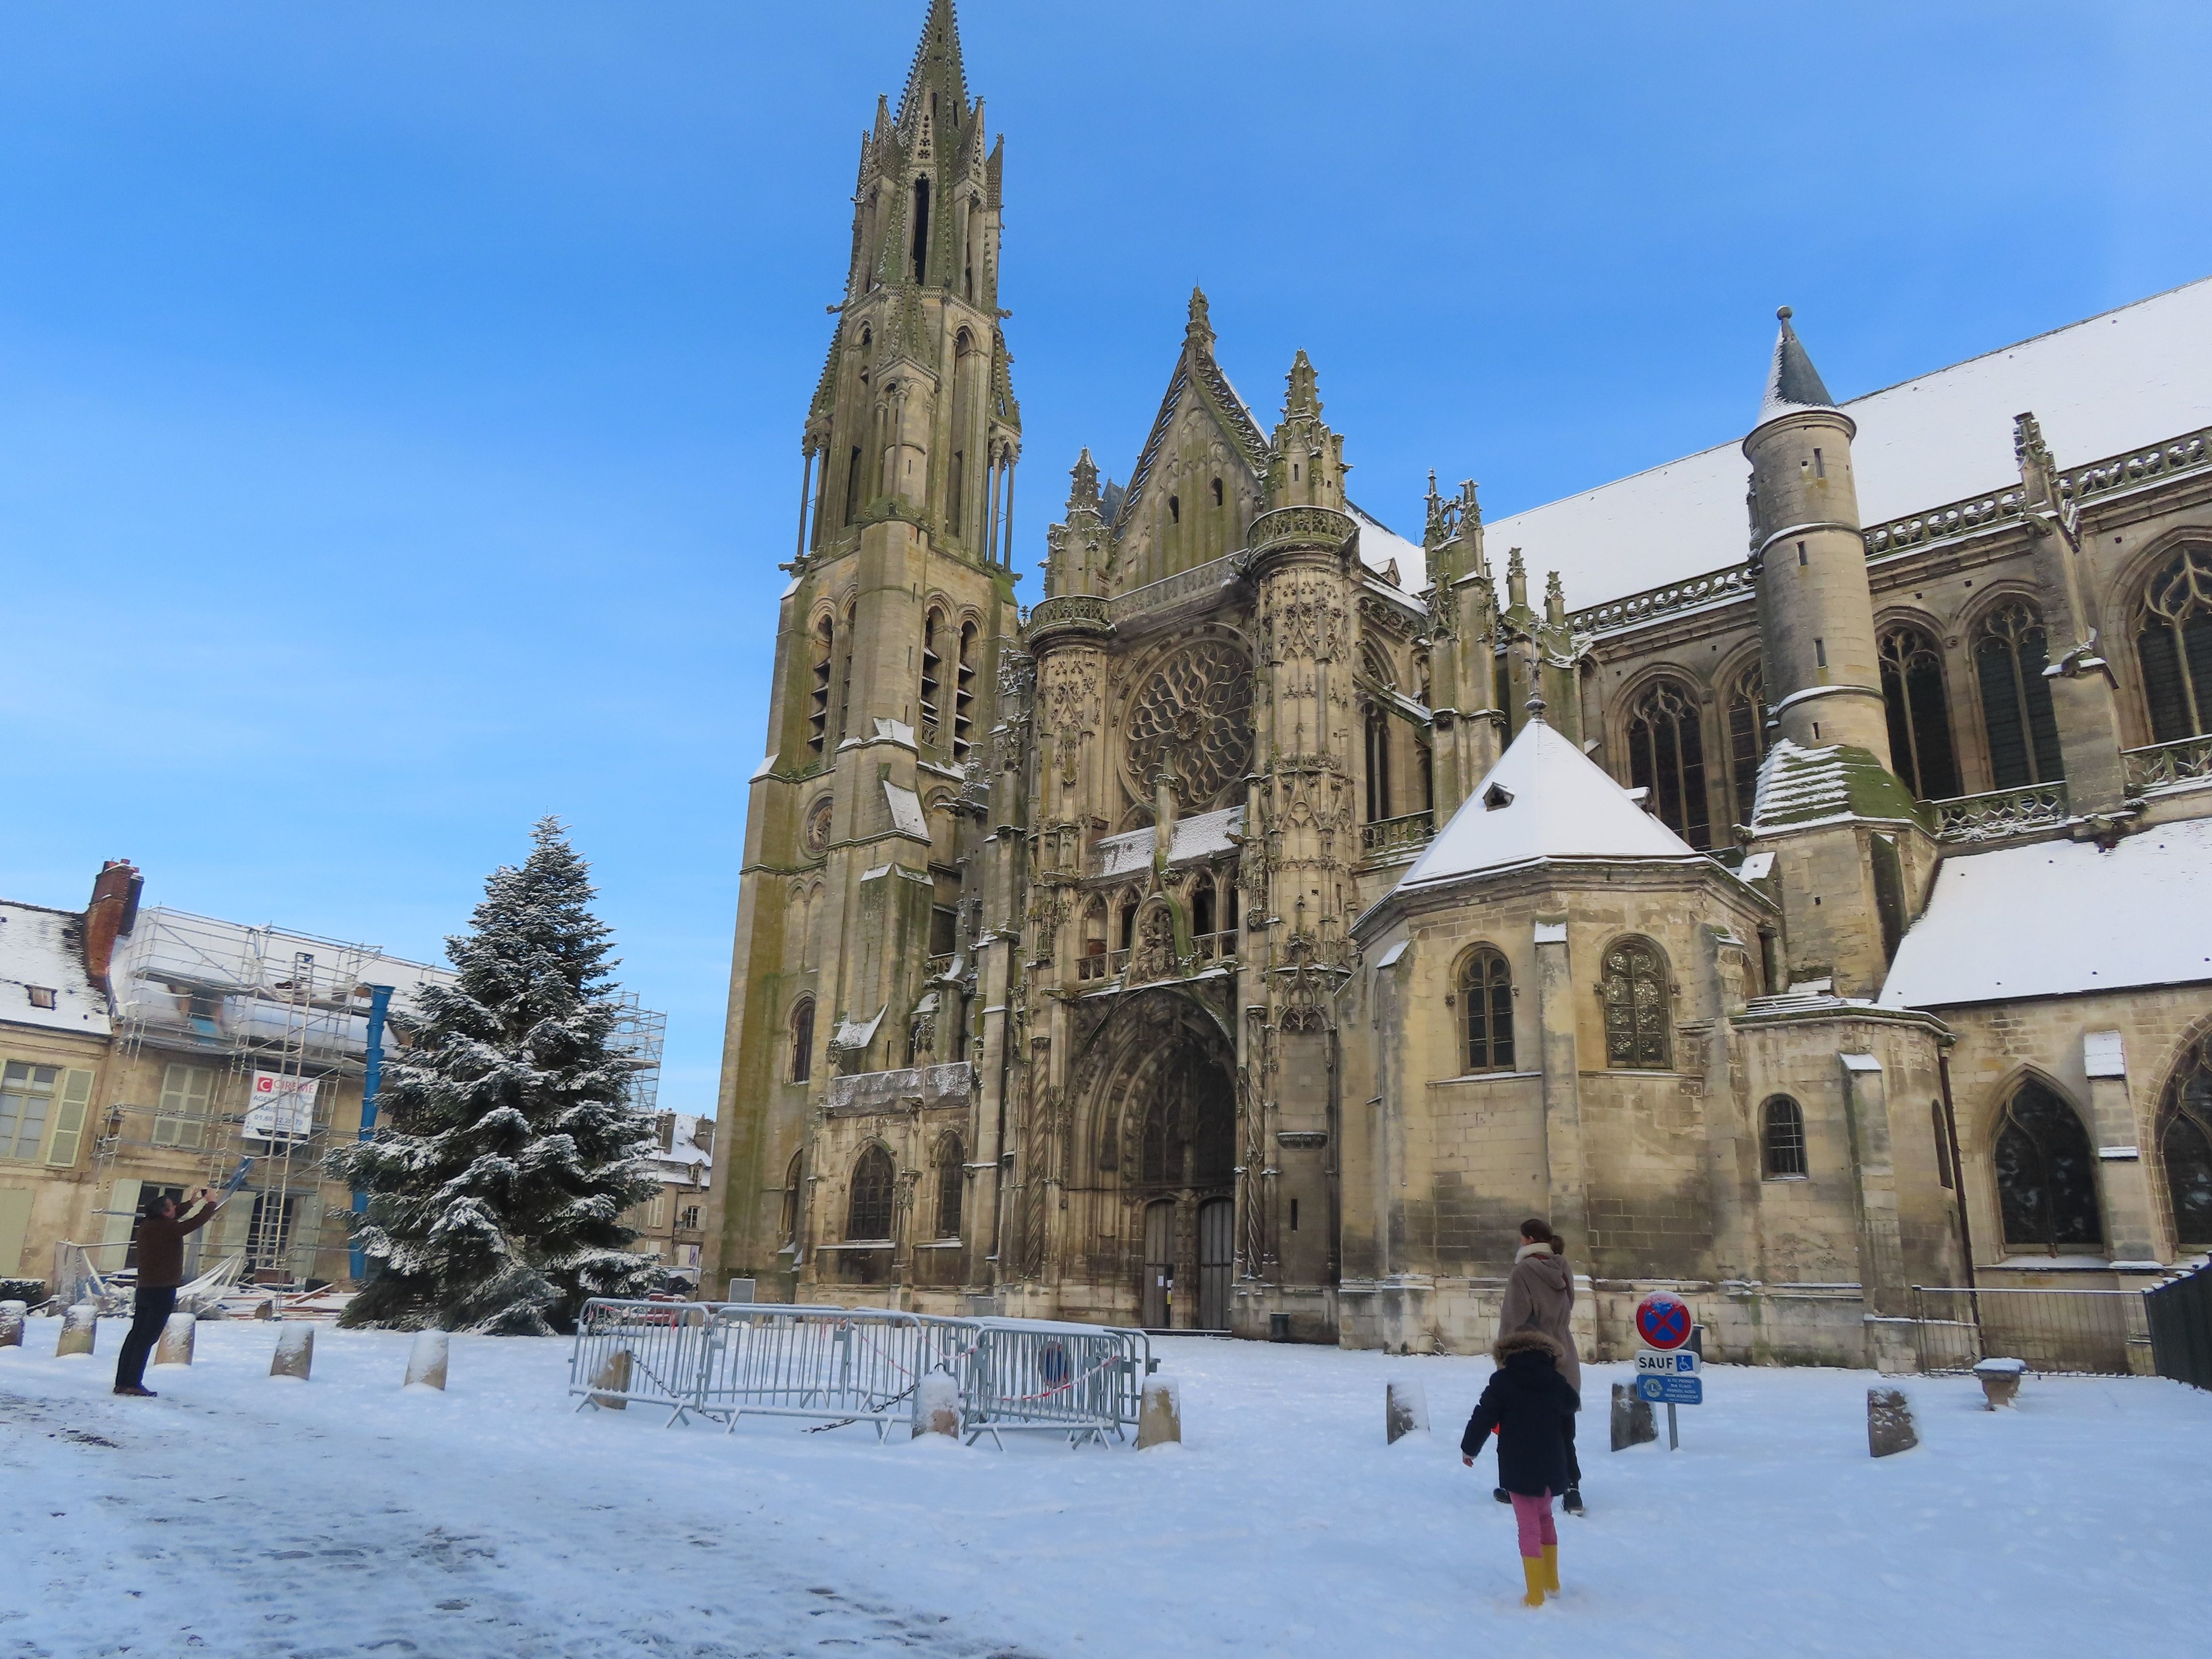 La cathédrale de Senlis va demeurer fermée au public pendant plusieurs mois, le temps de réaliser des travaux sur le système électrique endommagé par un incendie en décembre.